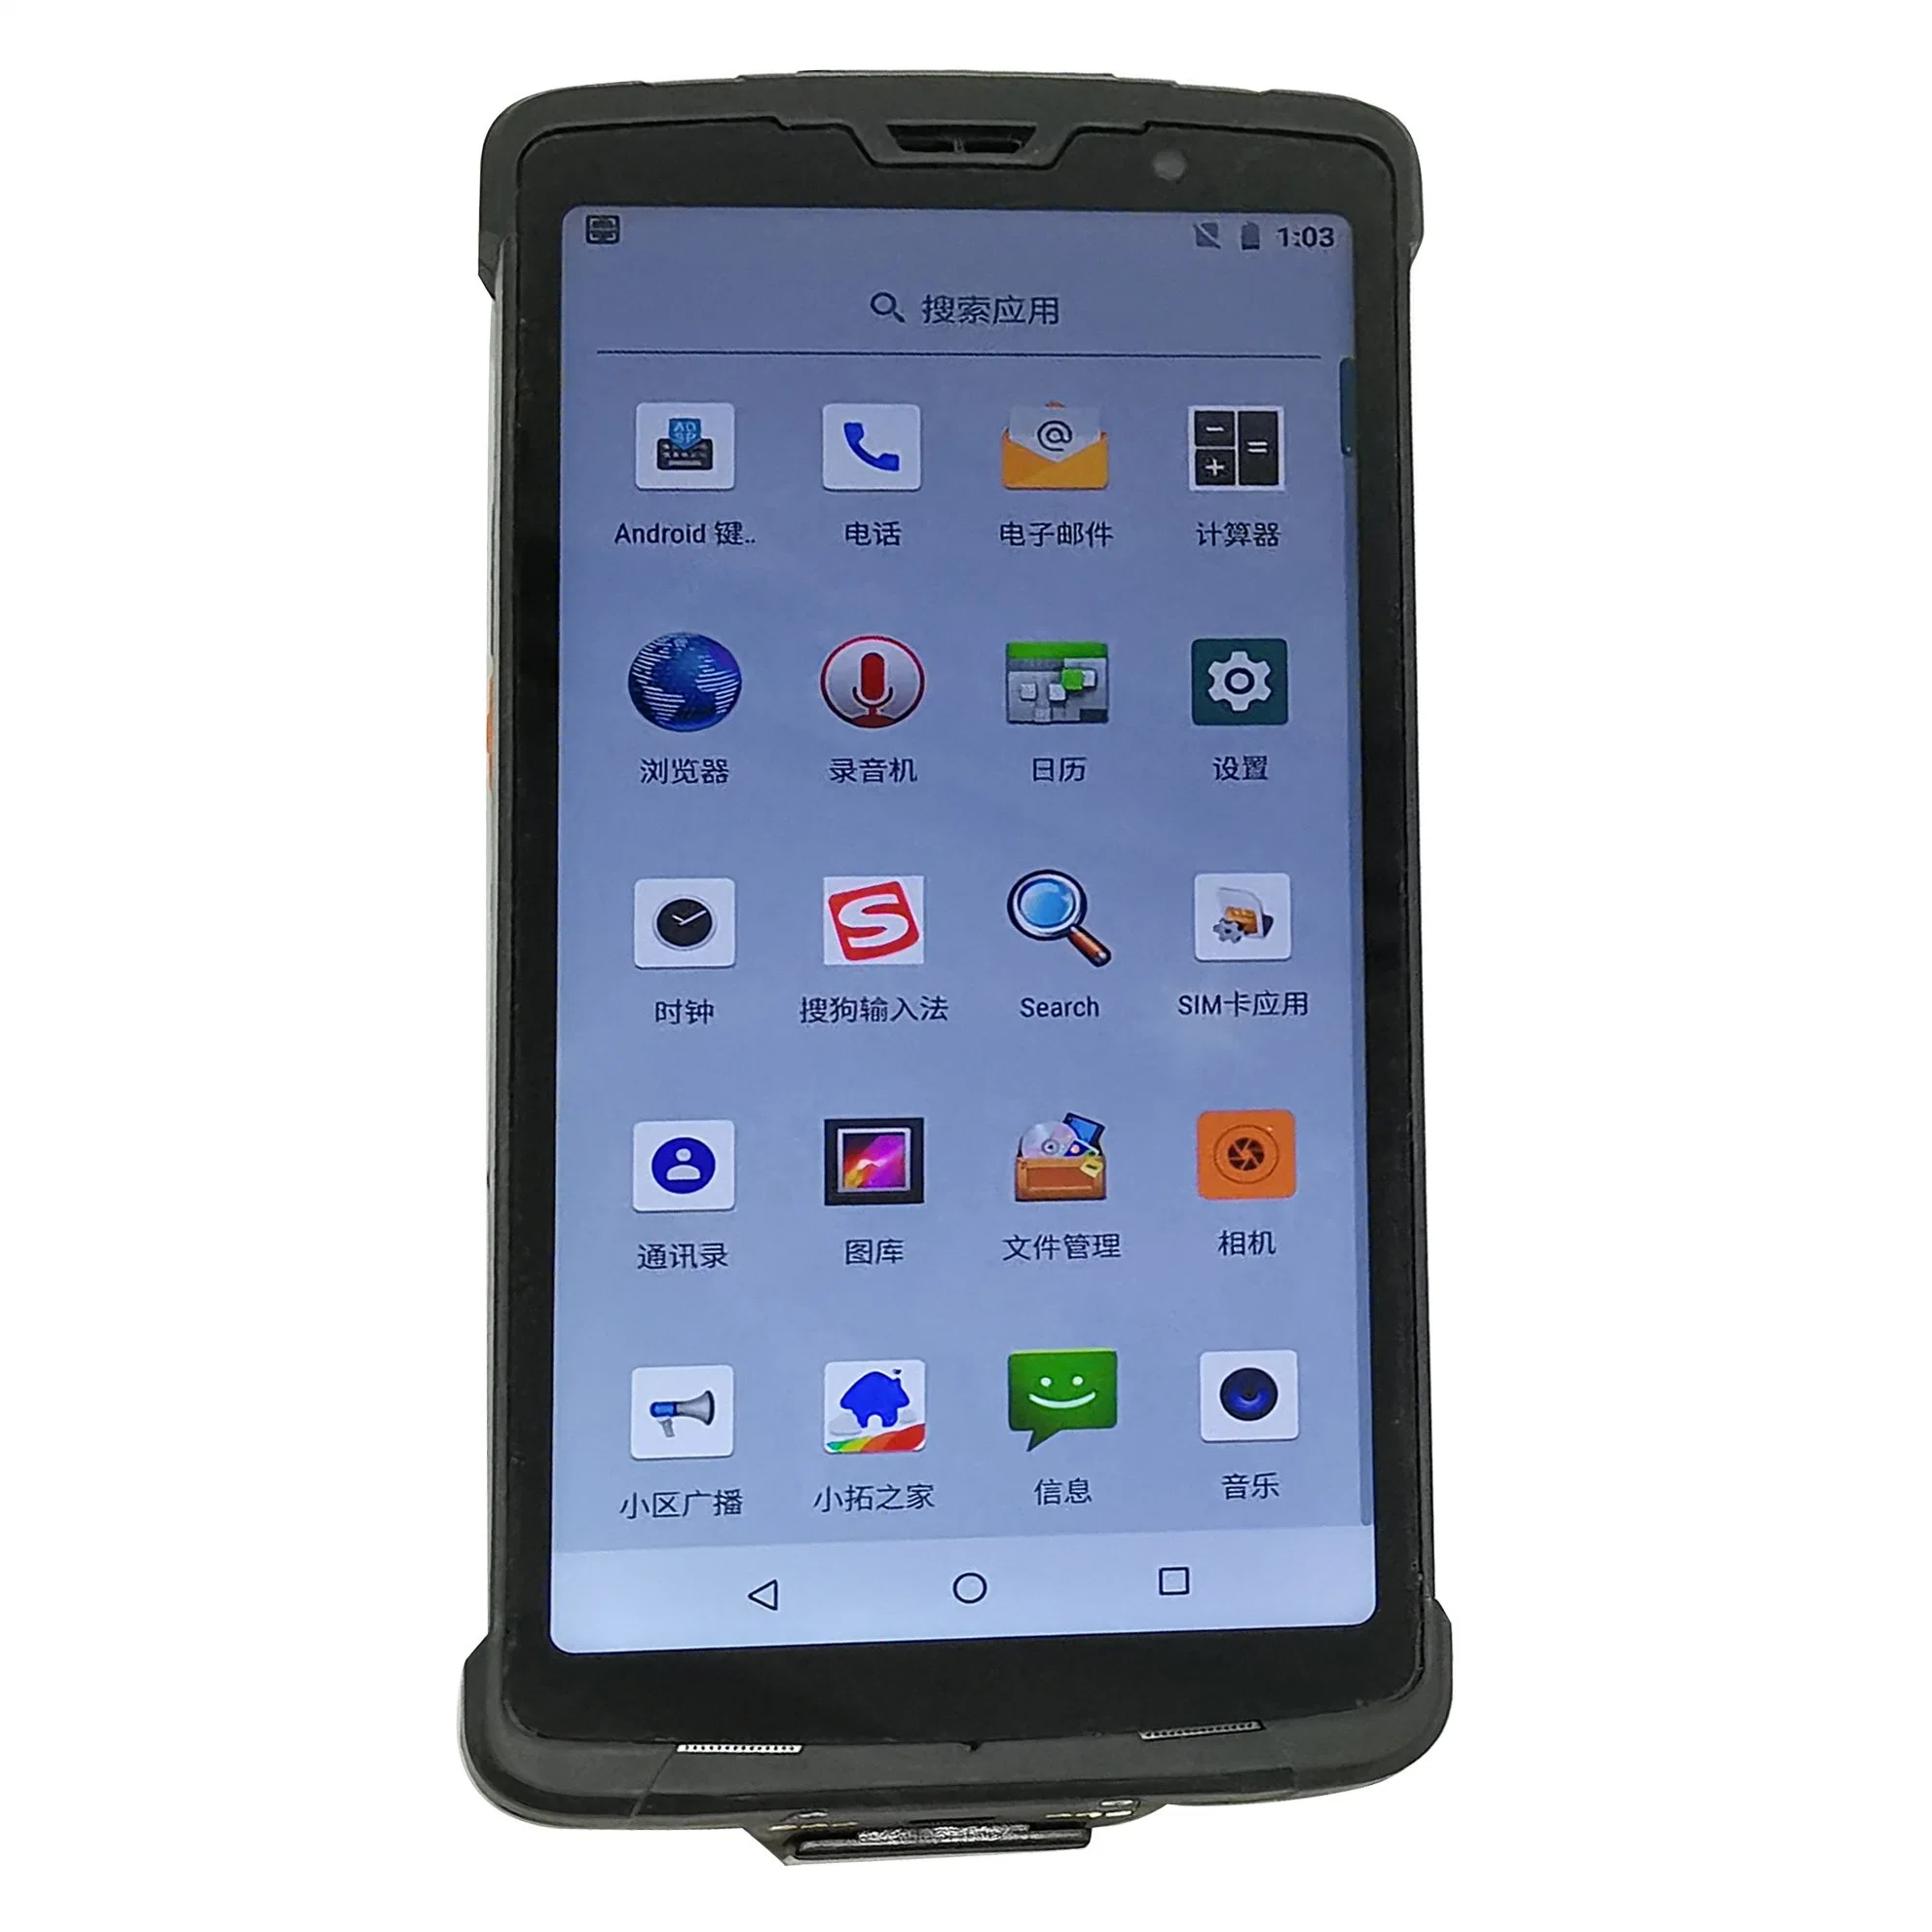 Barway 6 pulgadas y prueba de explosión Fall-Resistant Handheld PDA terminal IP67 T60 con 6000 mAh Batería Android 8.1.